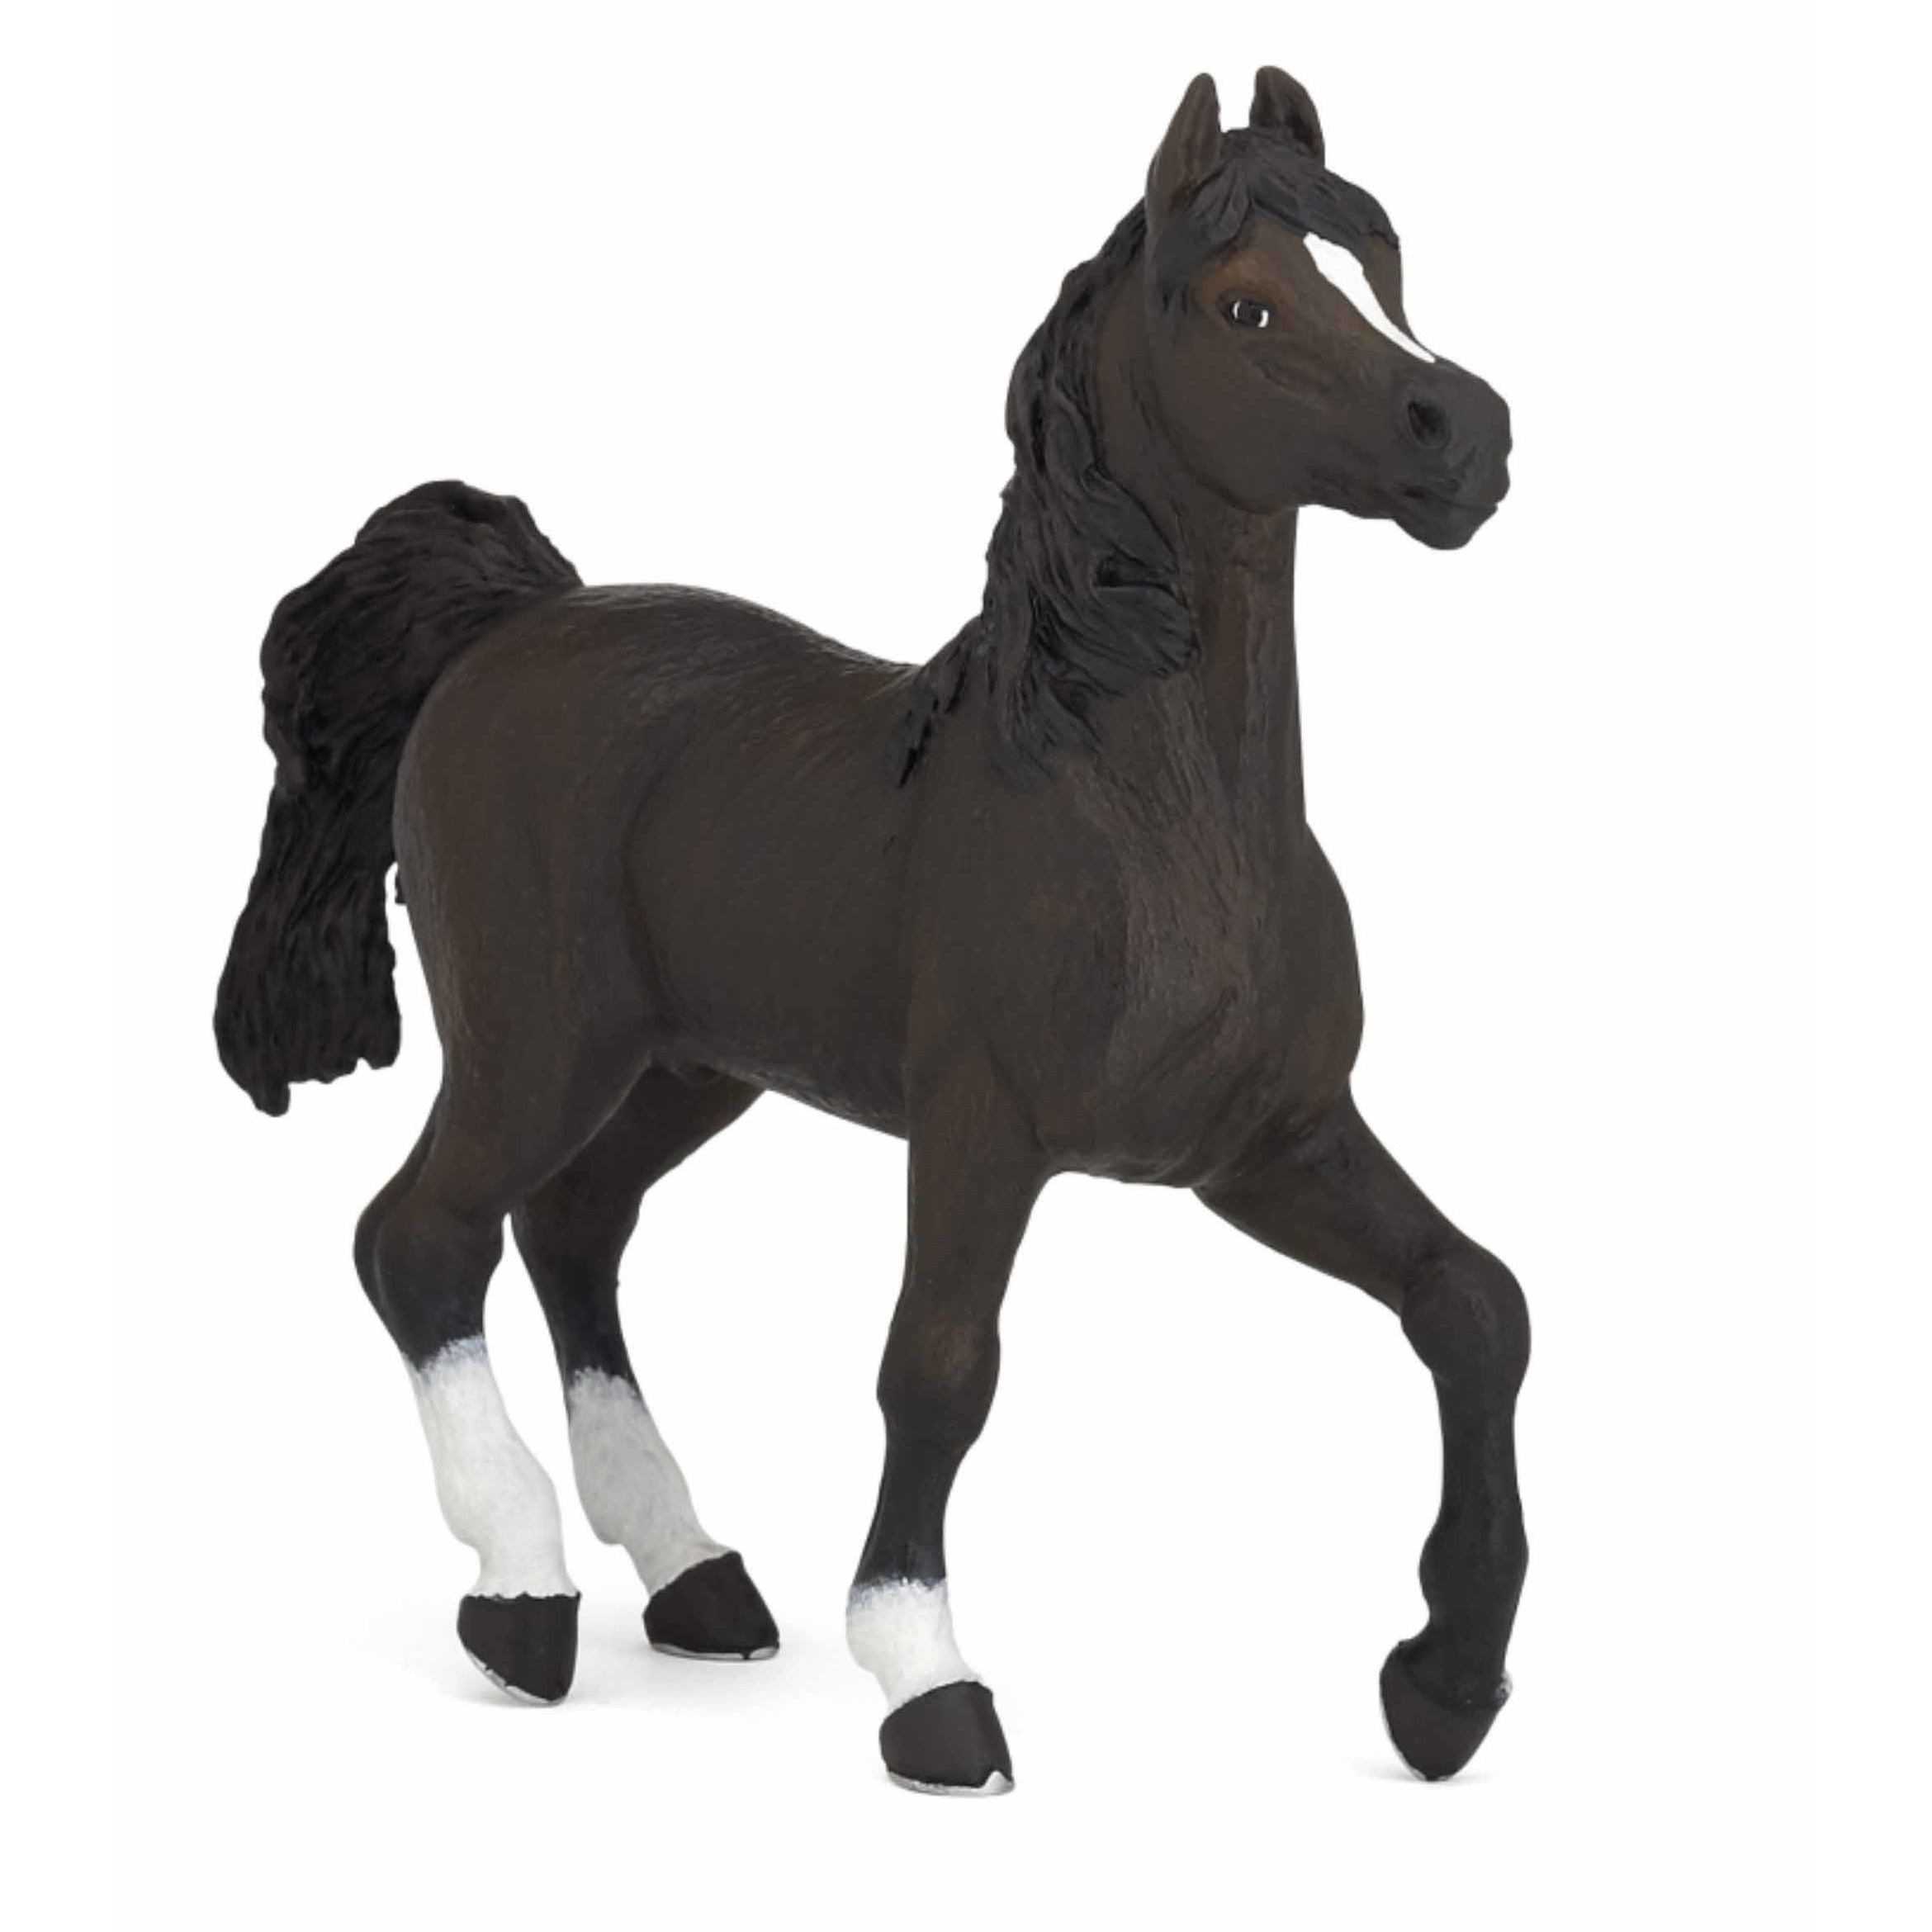 Plastic speelgoed figuur zwart Arabieren paard 13 cm